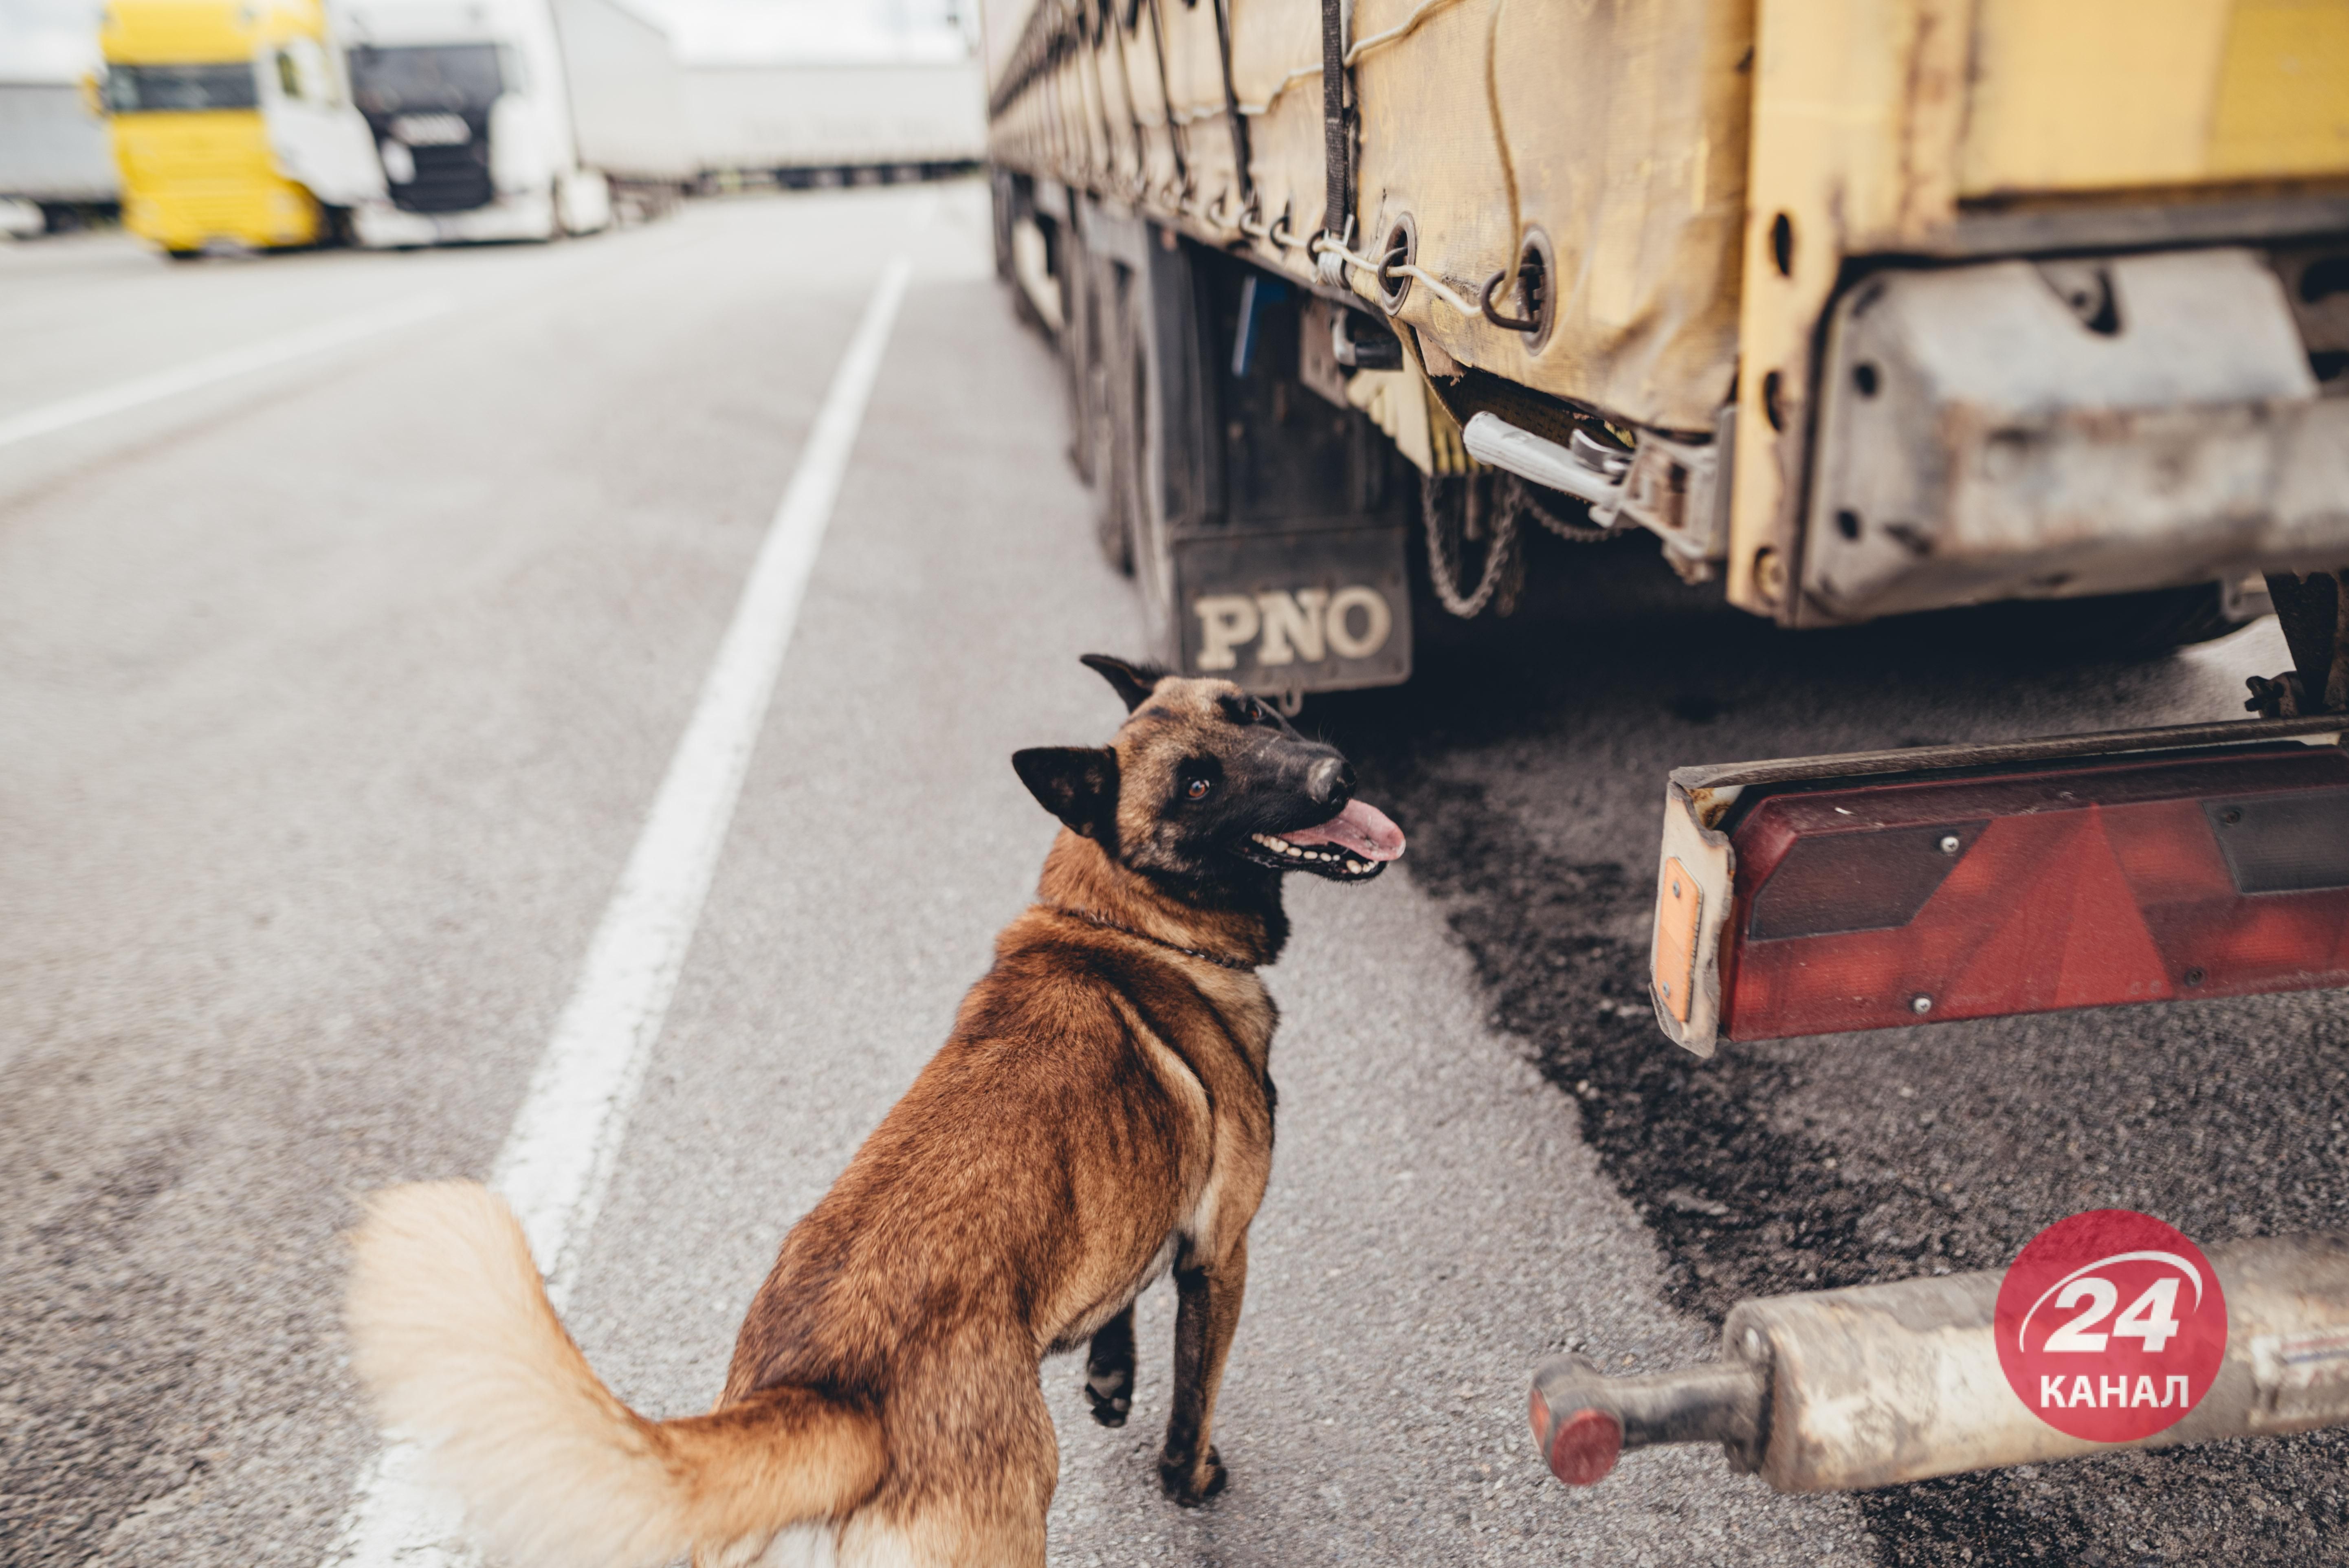 У ДПСУ розповіли, як кінолог погрожував гранатами задля порятунку собаки - 24 Канал